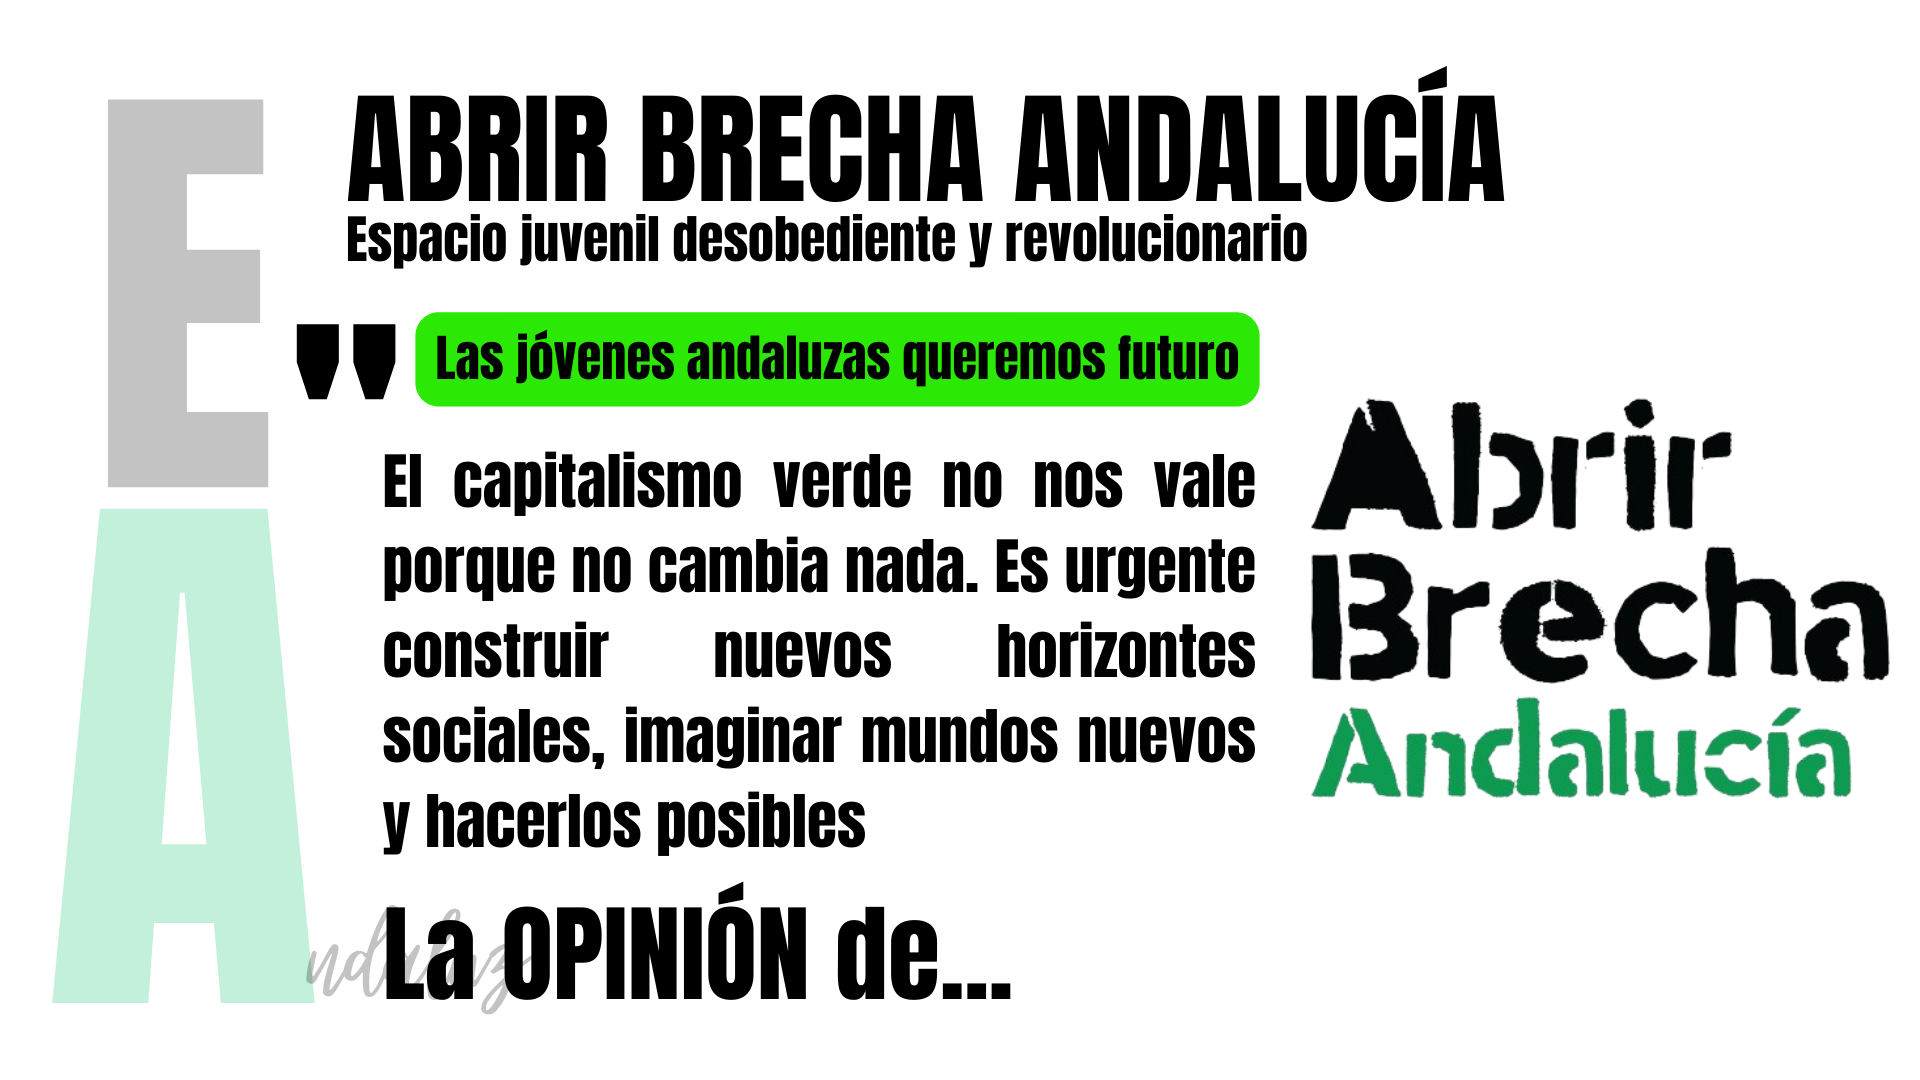 Artículo de opinión de Abrir Brecha Andalucía: "Las jóvenes queremos futuro".